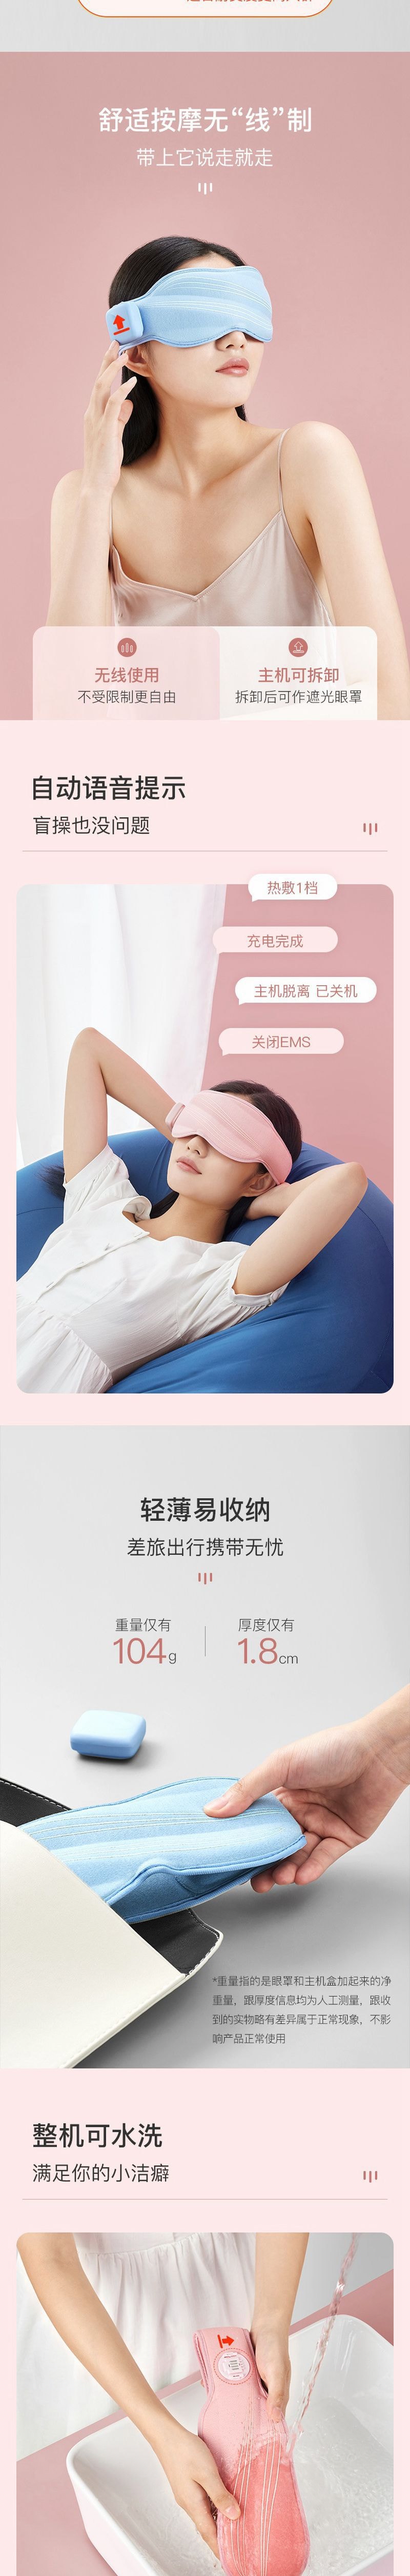 【香港DHL 5-7日达】网易智造 热敷按摩舒缓疲劳 无线微电流 晚安眼罩 蜜桃粉